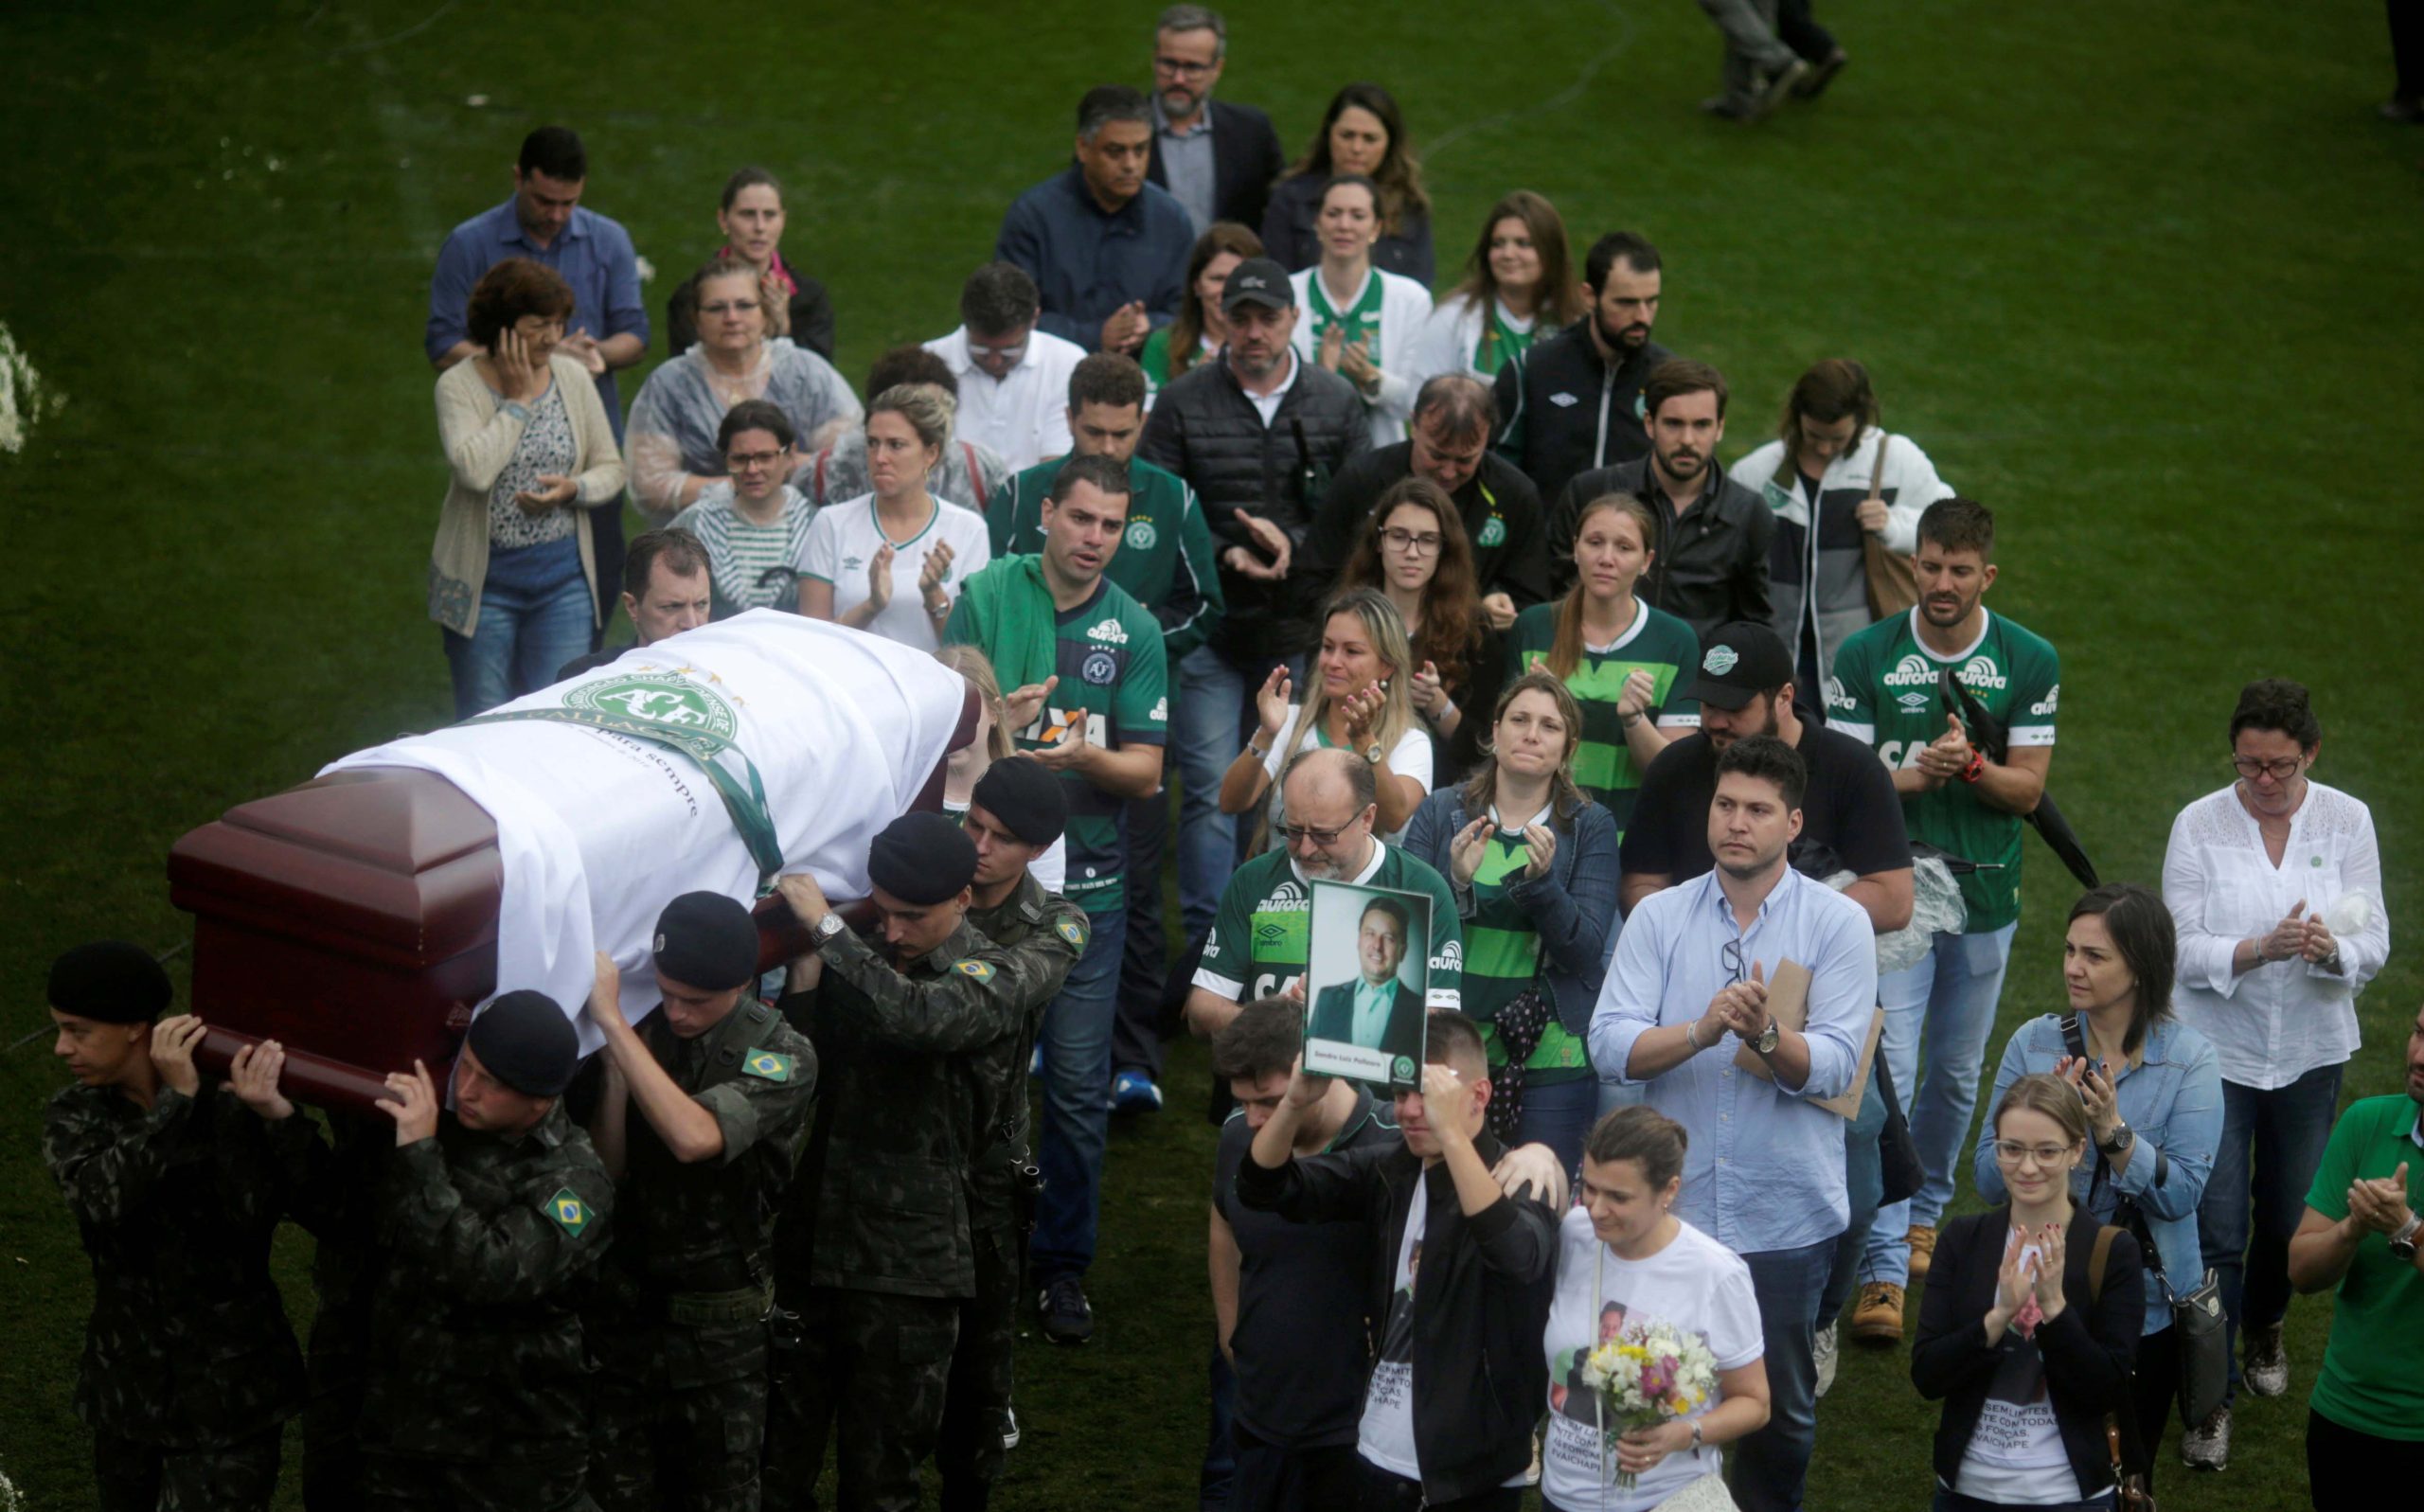 Le chagrin était lourd, alors que la famille, les fans et les personnes en deuil ont fait leurs derniers adieux aux footballeurs décédés au Brésil - 3